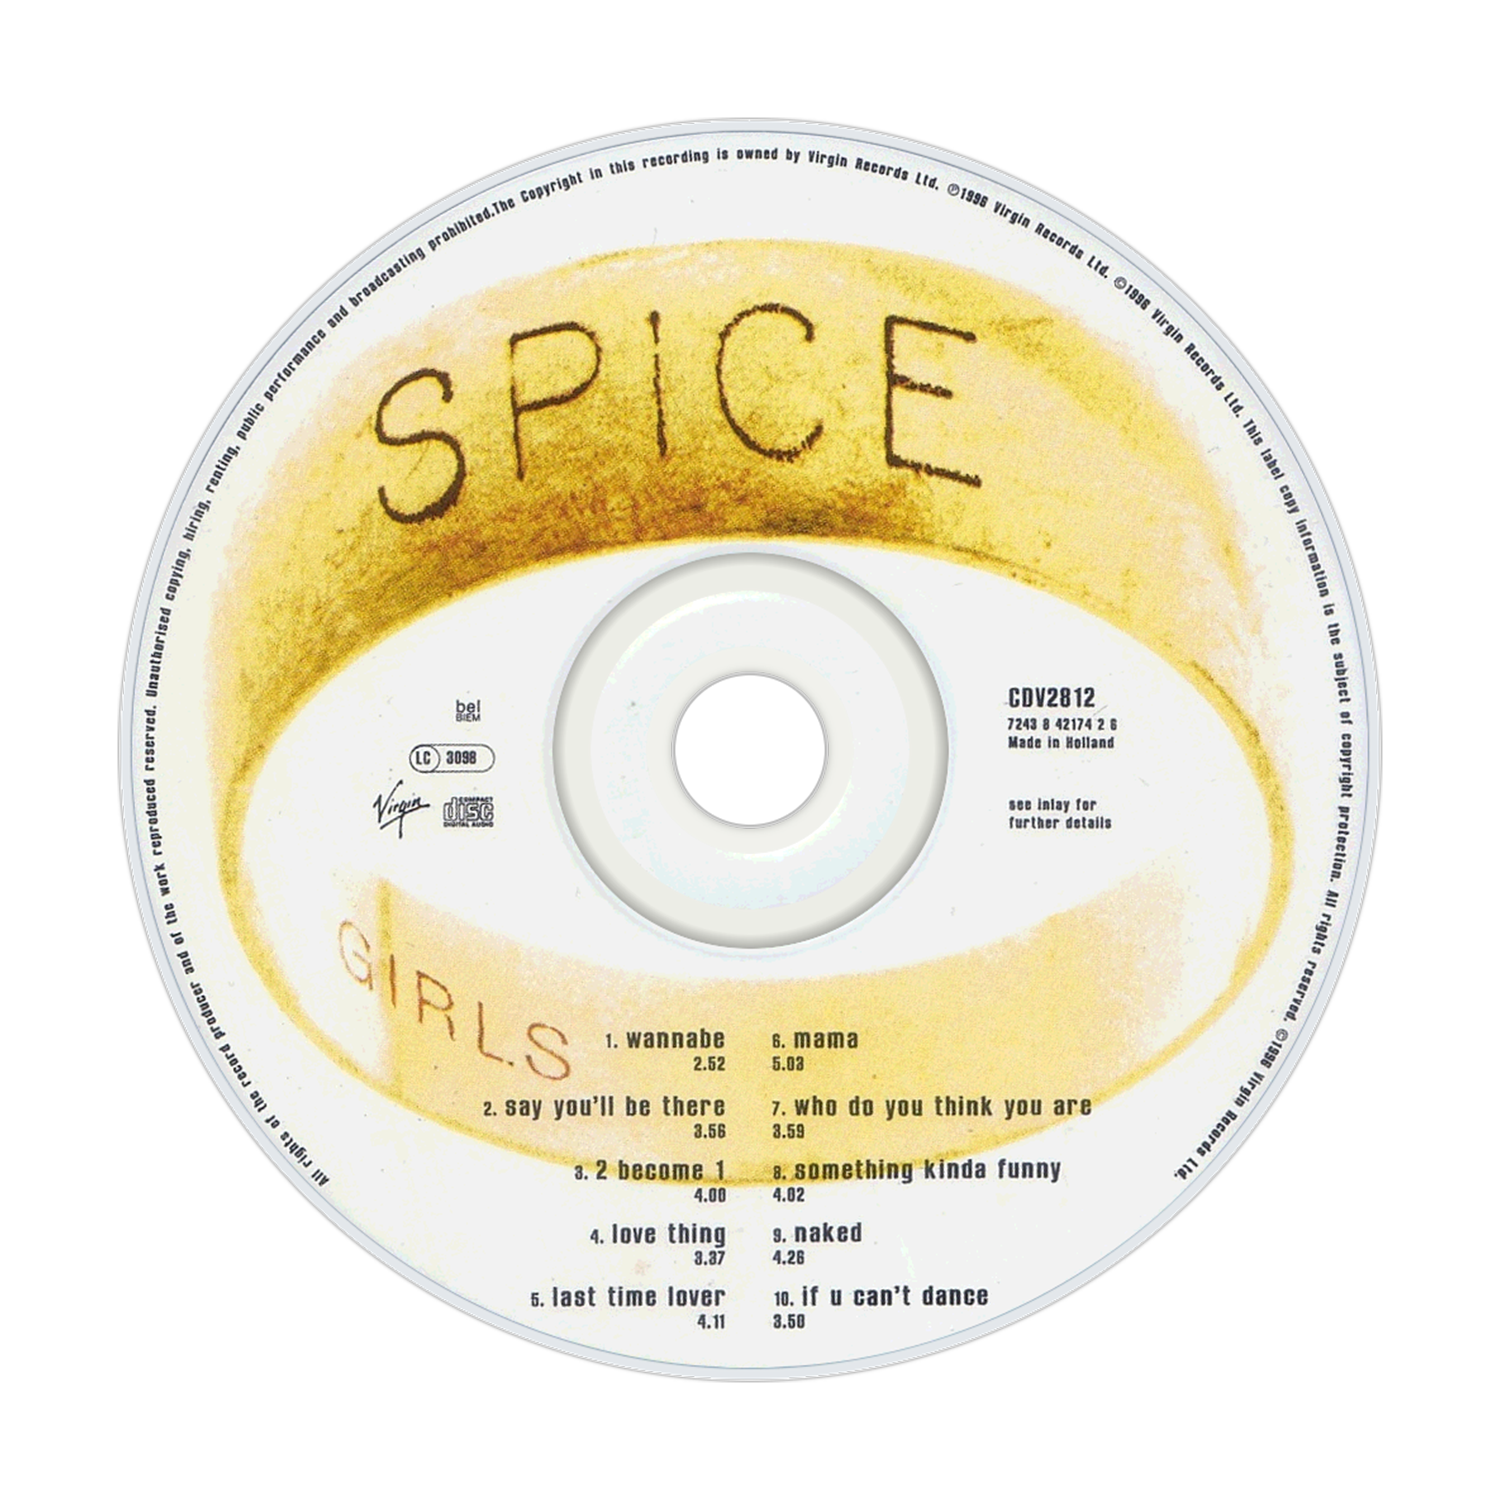 SPICE GIRLS CD